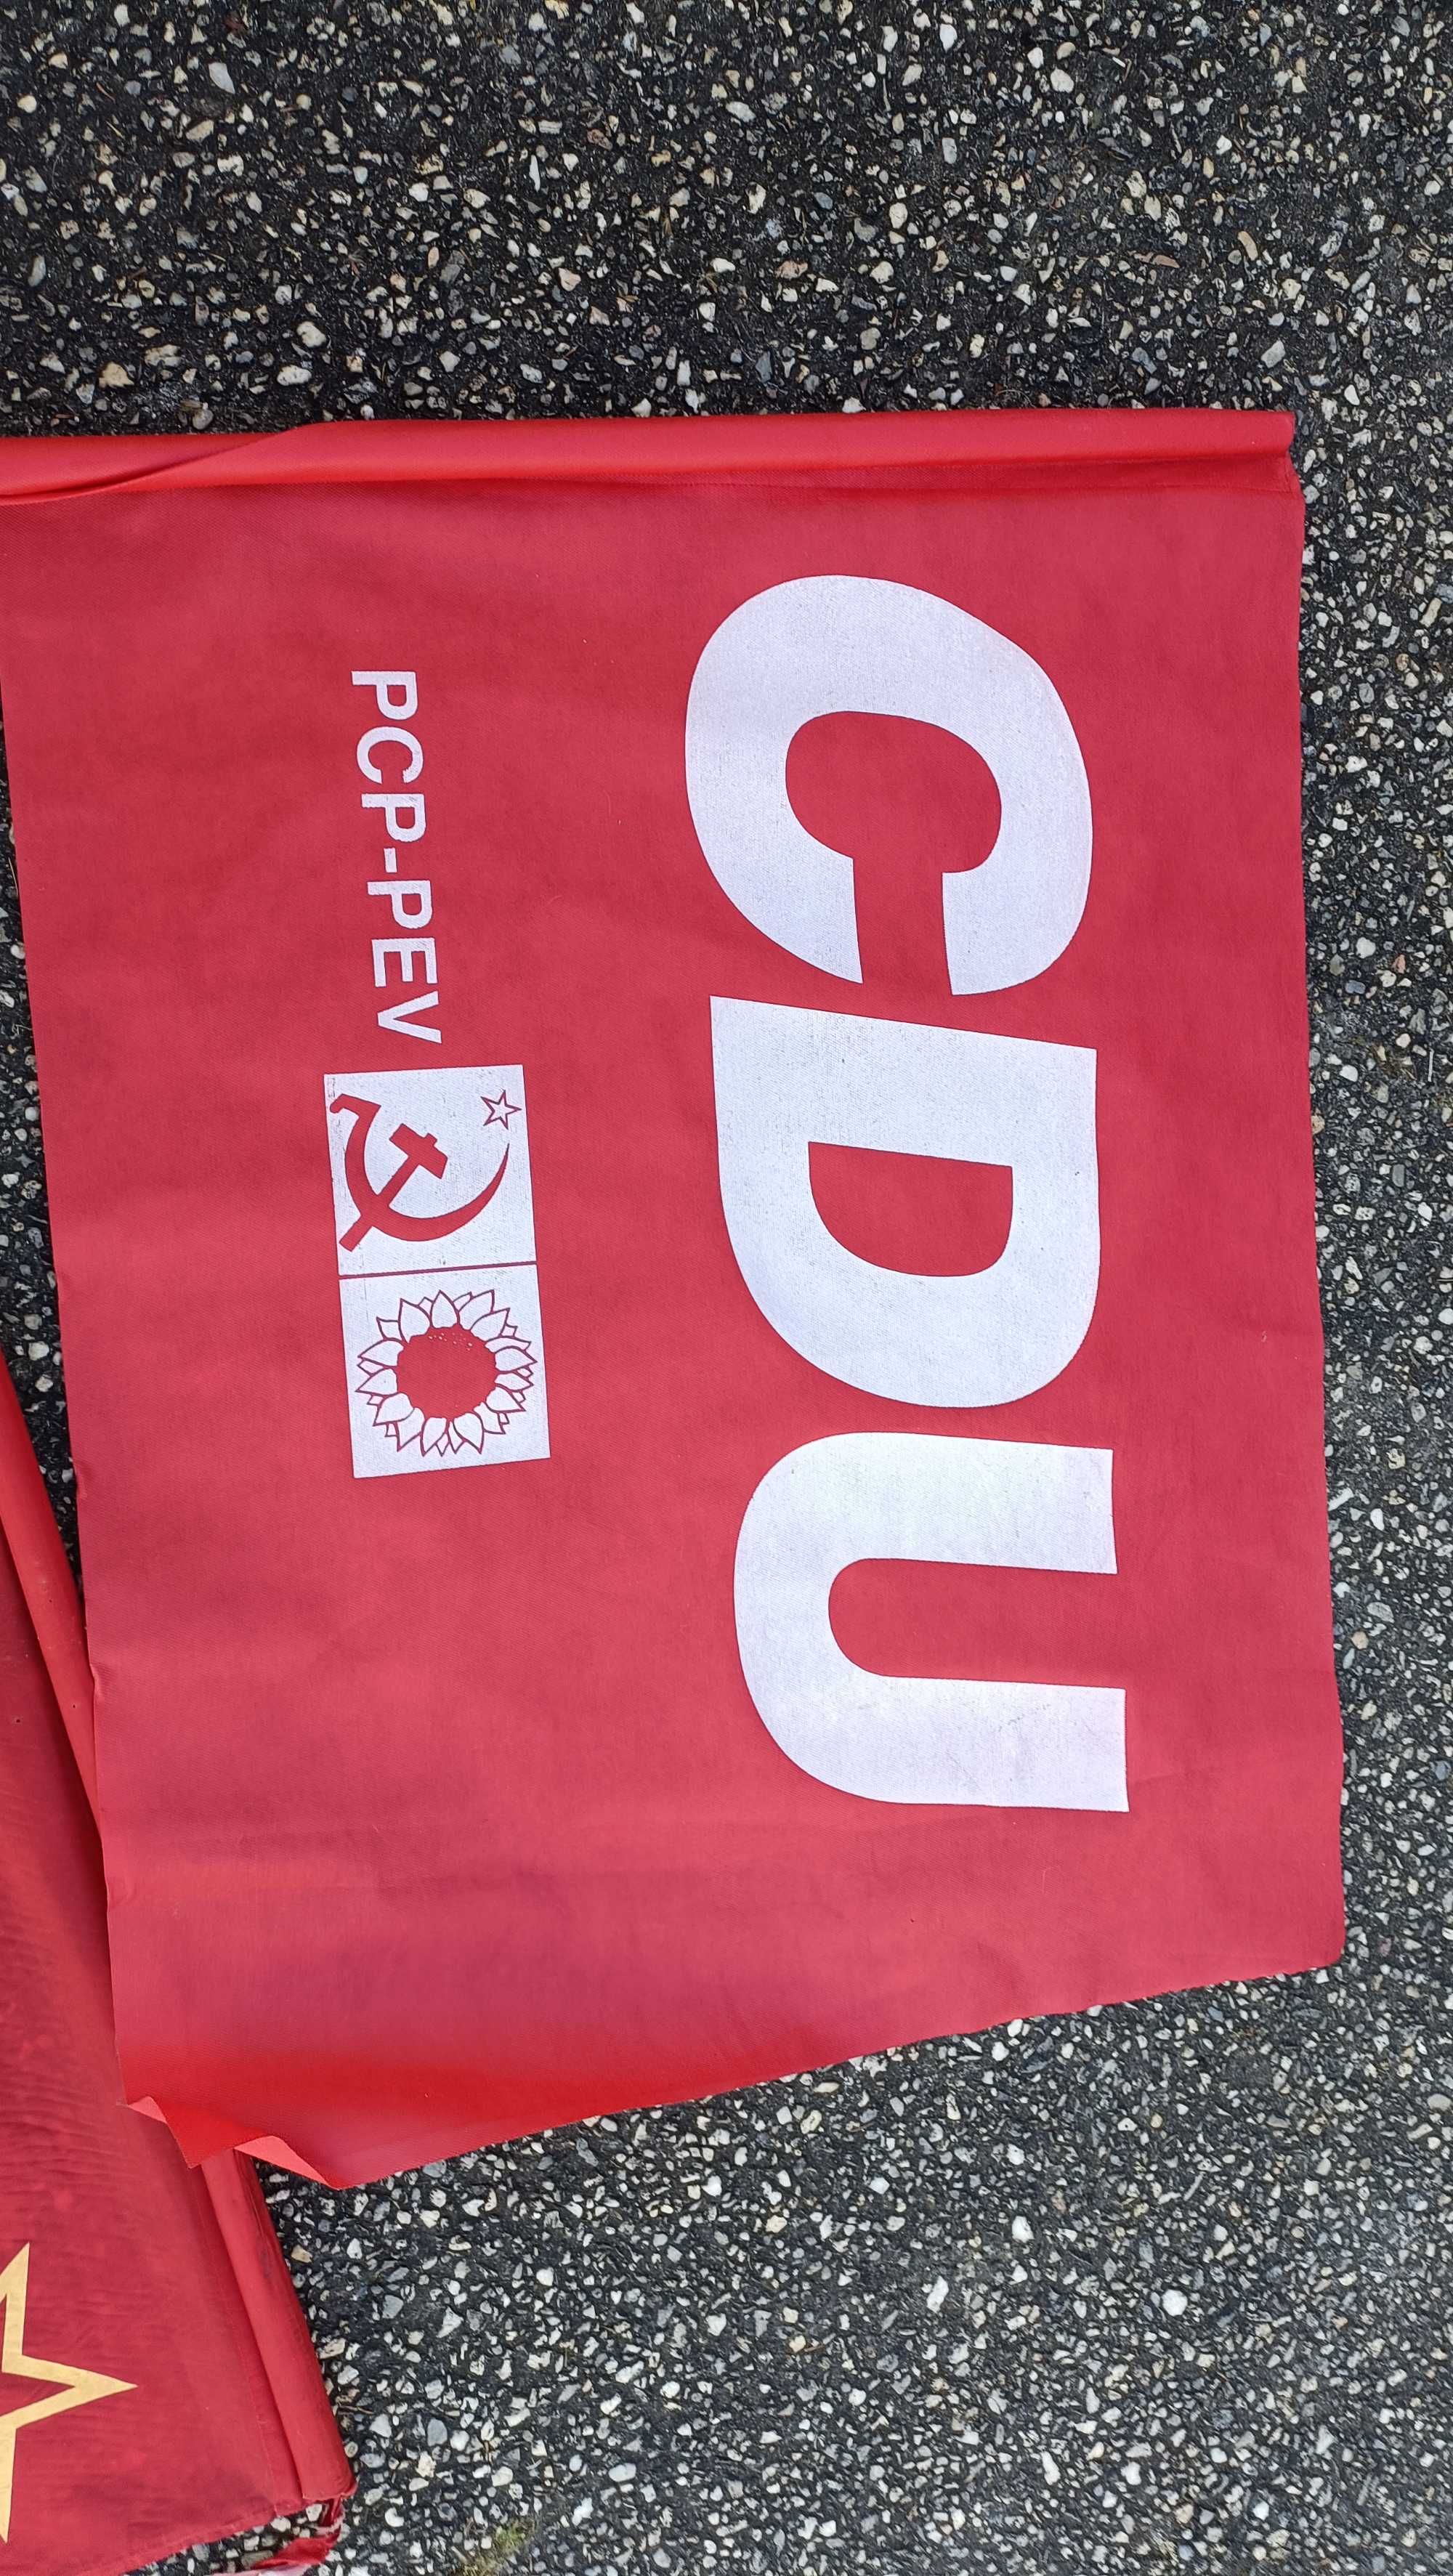 bandeiras do PCP / CDU